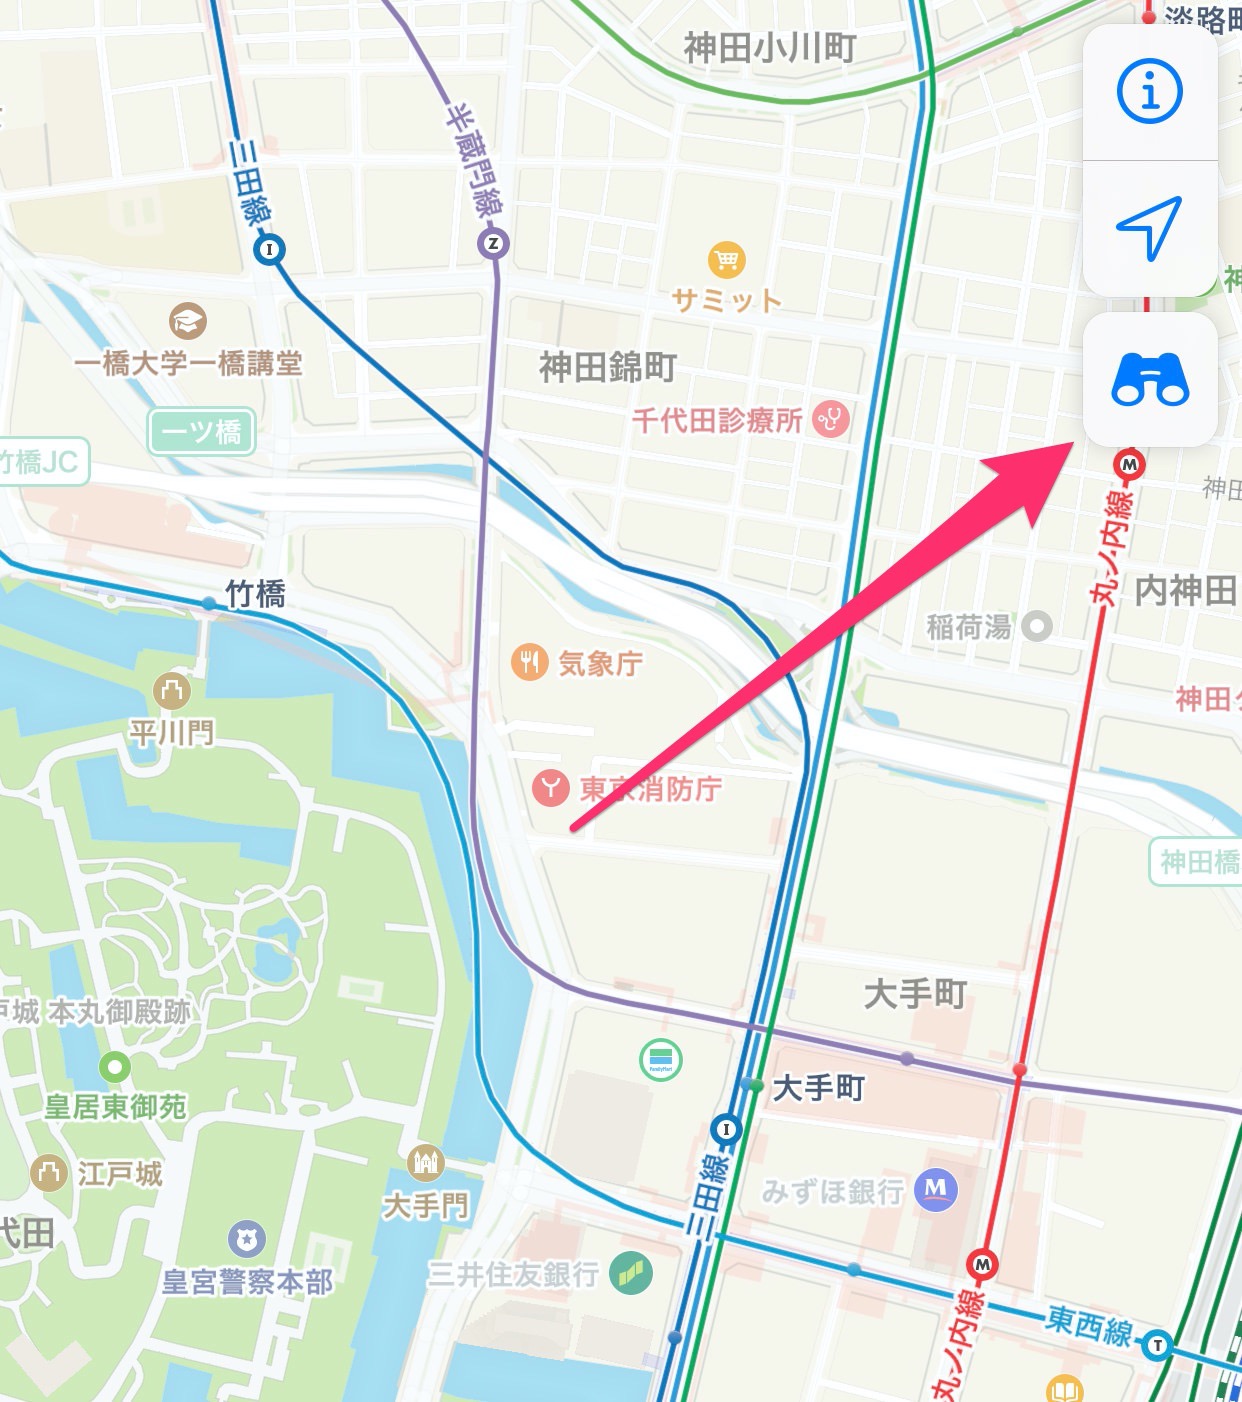 Appleマップのストリートビュー機能「Look Around」日本でも利用可能に